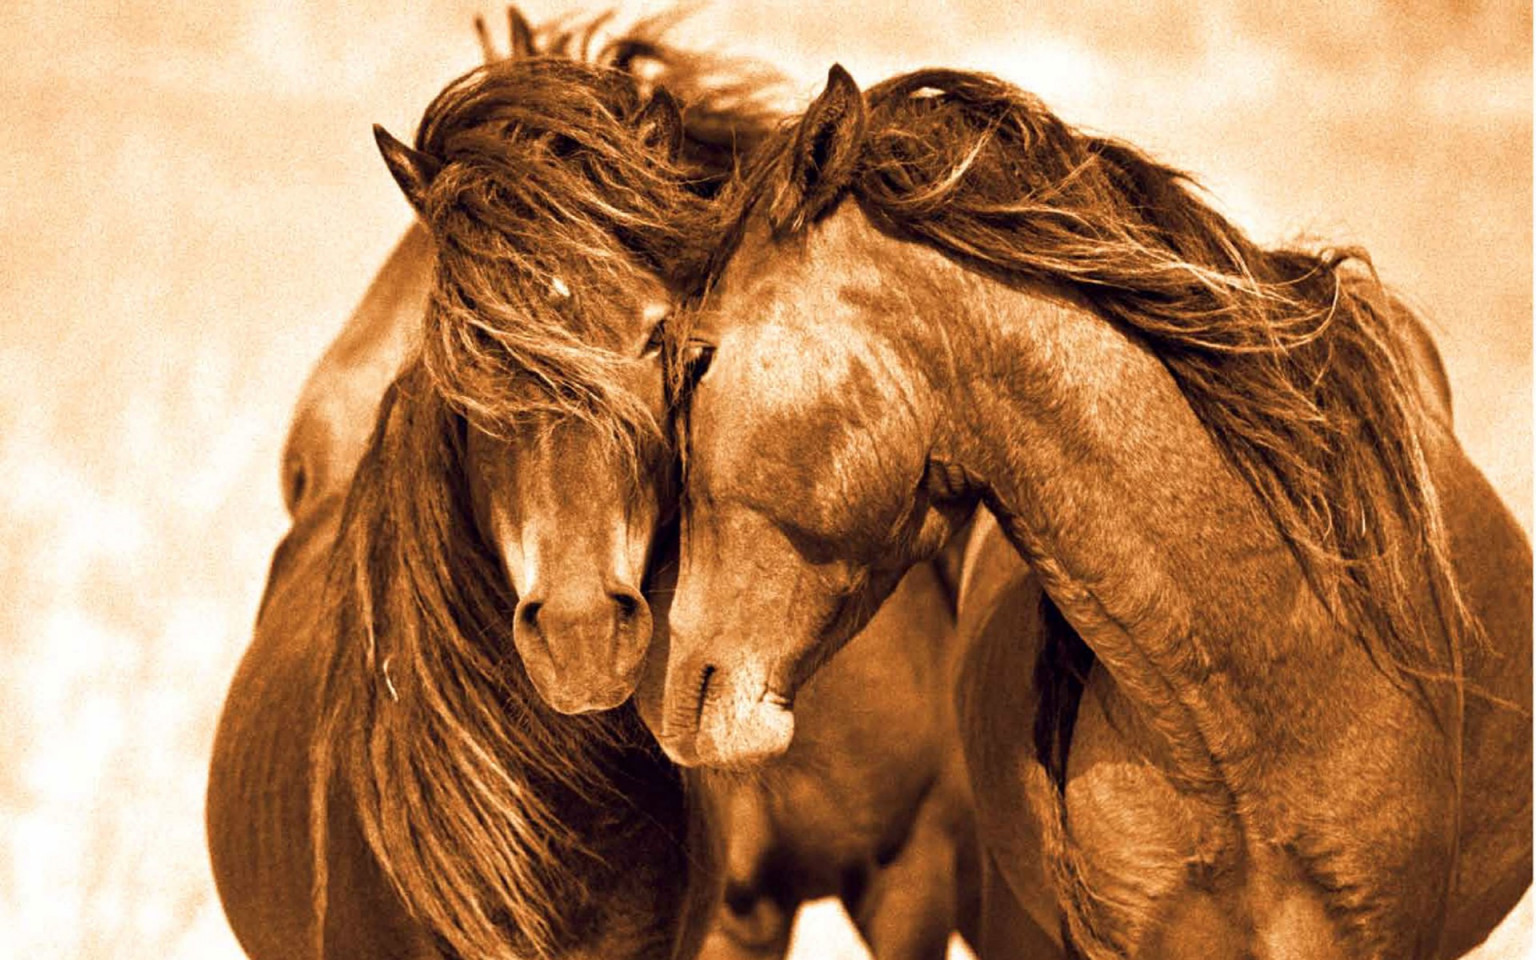 Tổng hợp hình ảnh về những chú ngựa đẹp nhất  - [Kích thước hình ảnh: 1536x960 px]